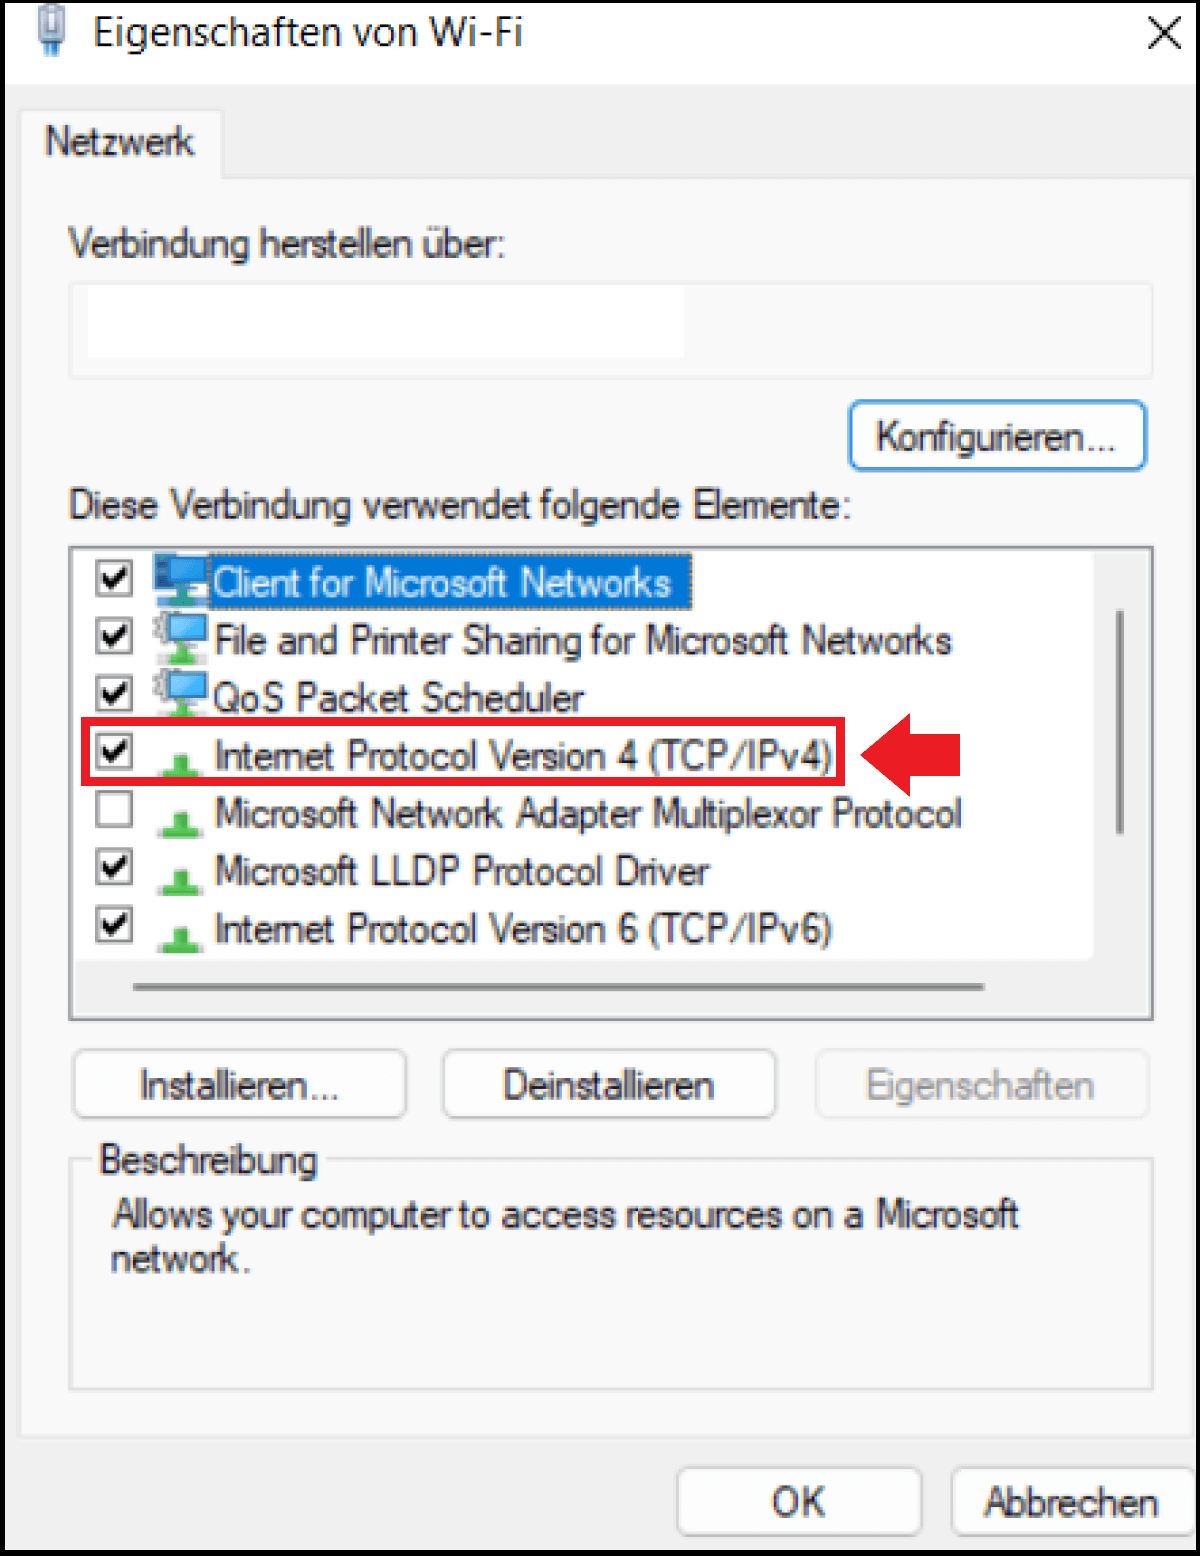 Windows-11- Eigenschaften-Menü des ausgewählten Netzwerkadapters mit verschiedenen Netzwerkelementen